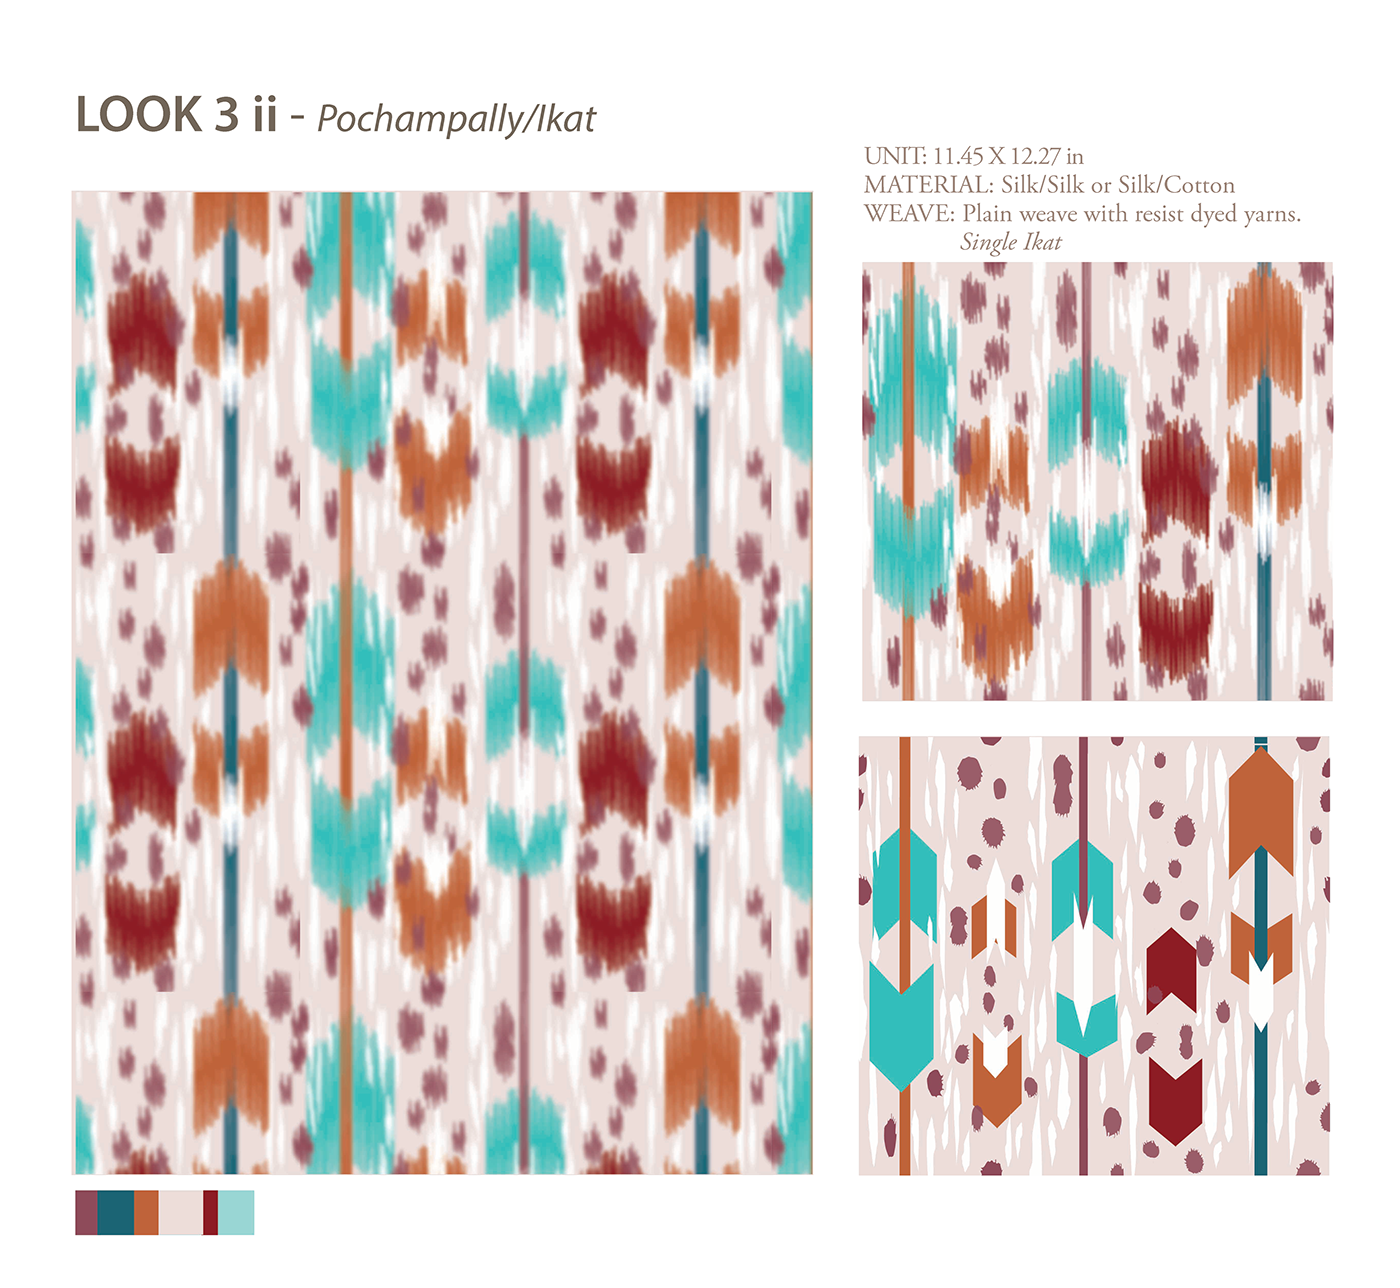 Weave Design Ikat Prints & patterns SS19 uk market graphic design  ILLUSTRATION  cads